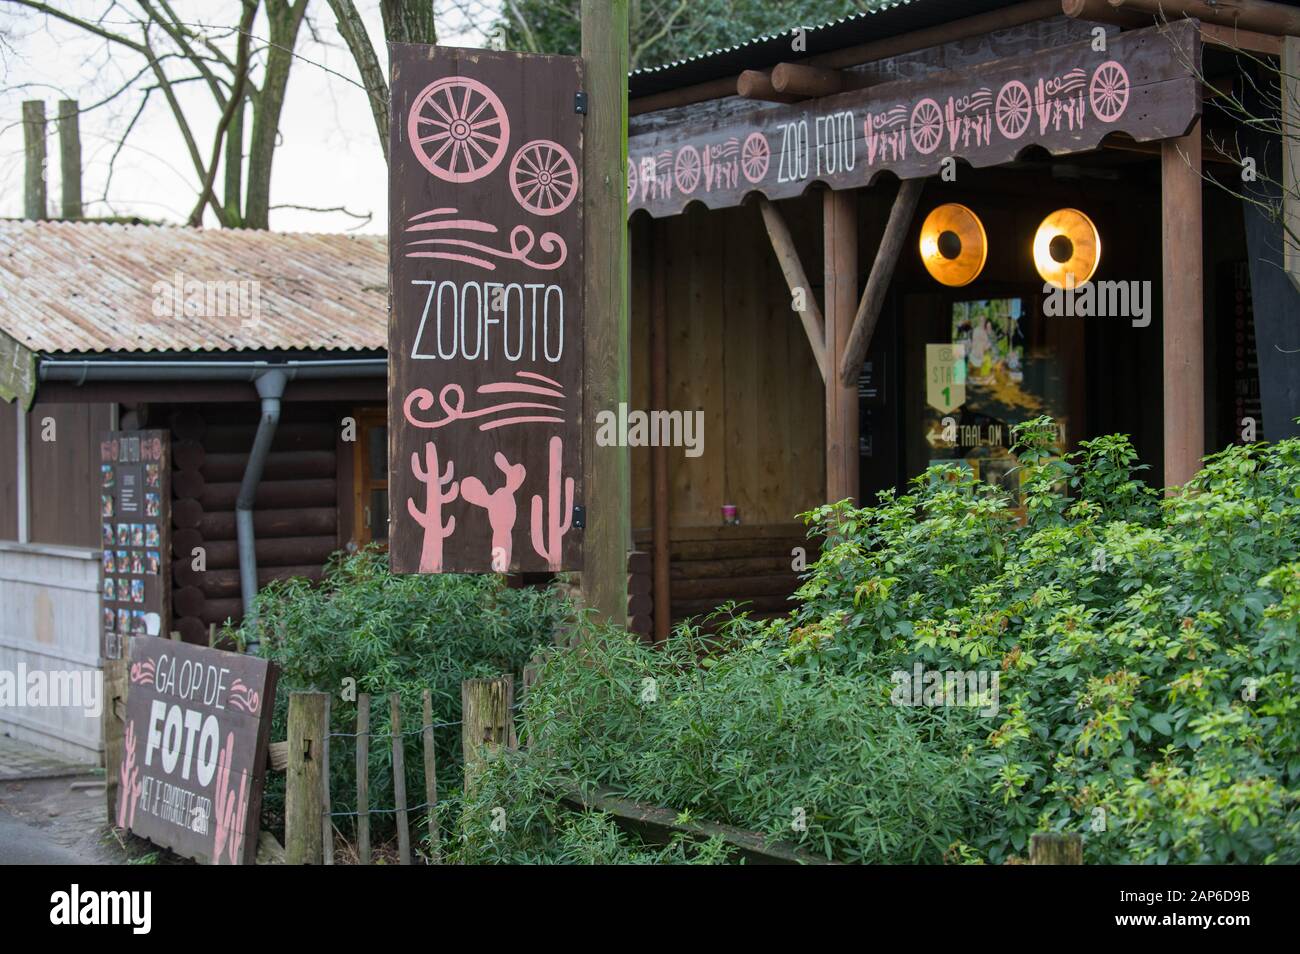 Servizio fotografico Zoofoto allo zoo Diergaarde Blijdorp di Rotterdam, Paesi Bassi Foto Stock